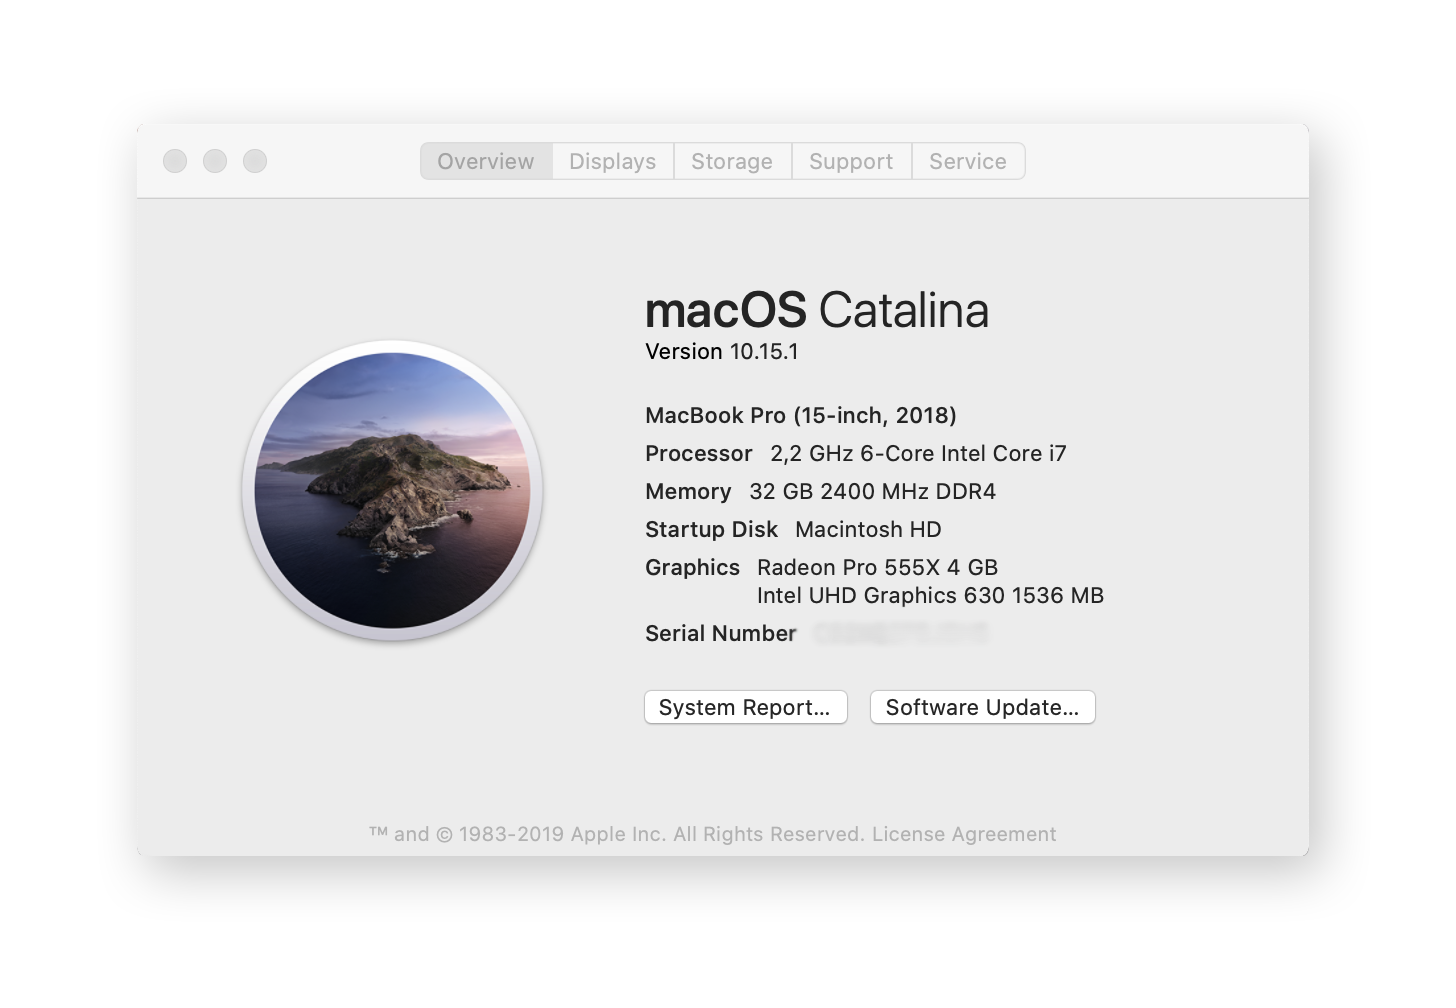 Maintenez le système d'exploitation de votre Mac à jour en consultant la rubrique À propos de ce Mac dans le menu Pomme.